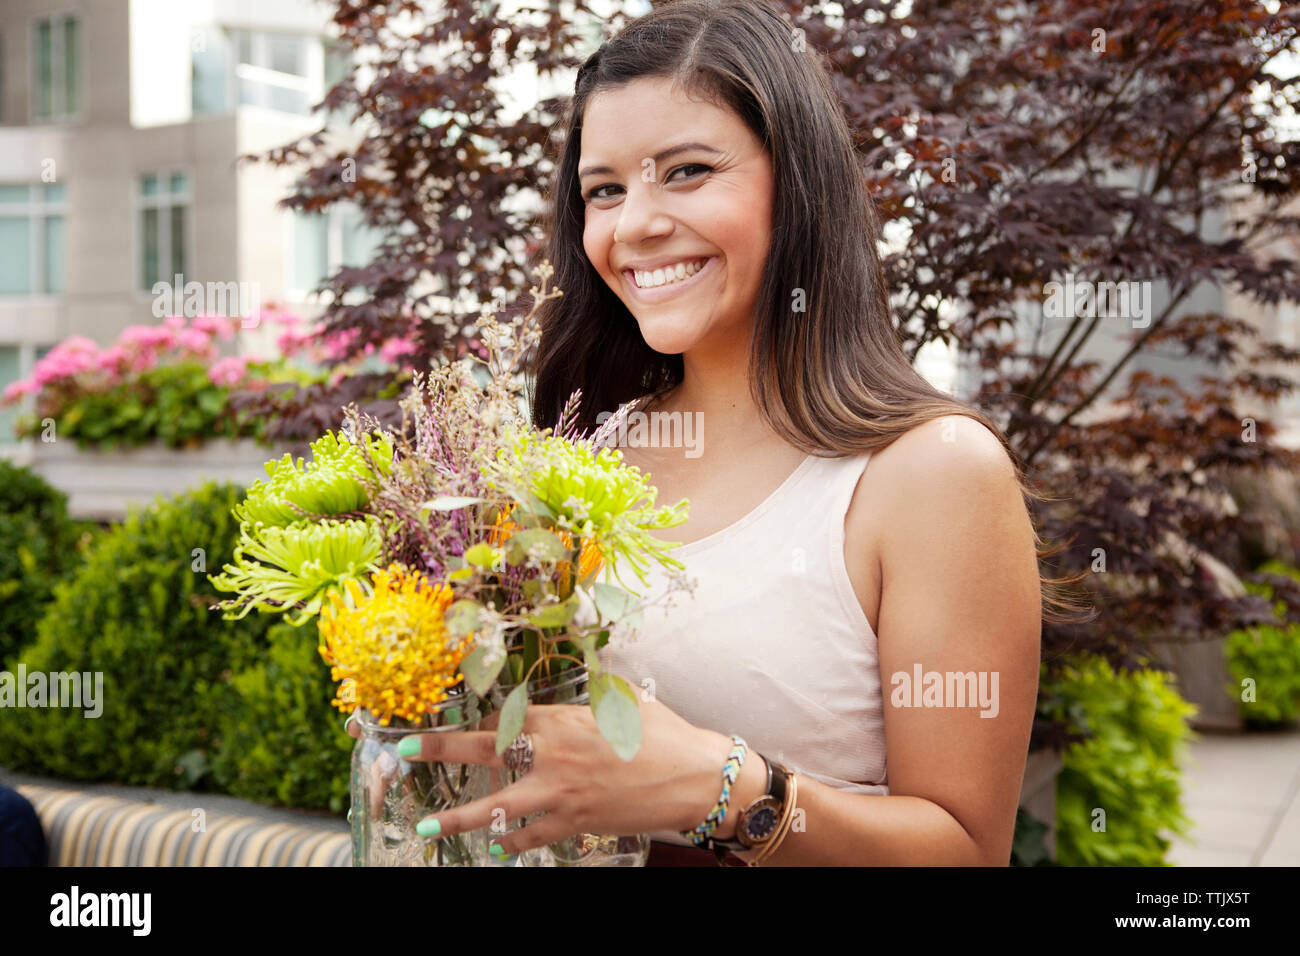 Lächelnde Frau Blumen Holding jar Beim stehen gegen Pflanzen Stockfoto